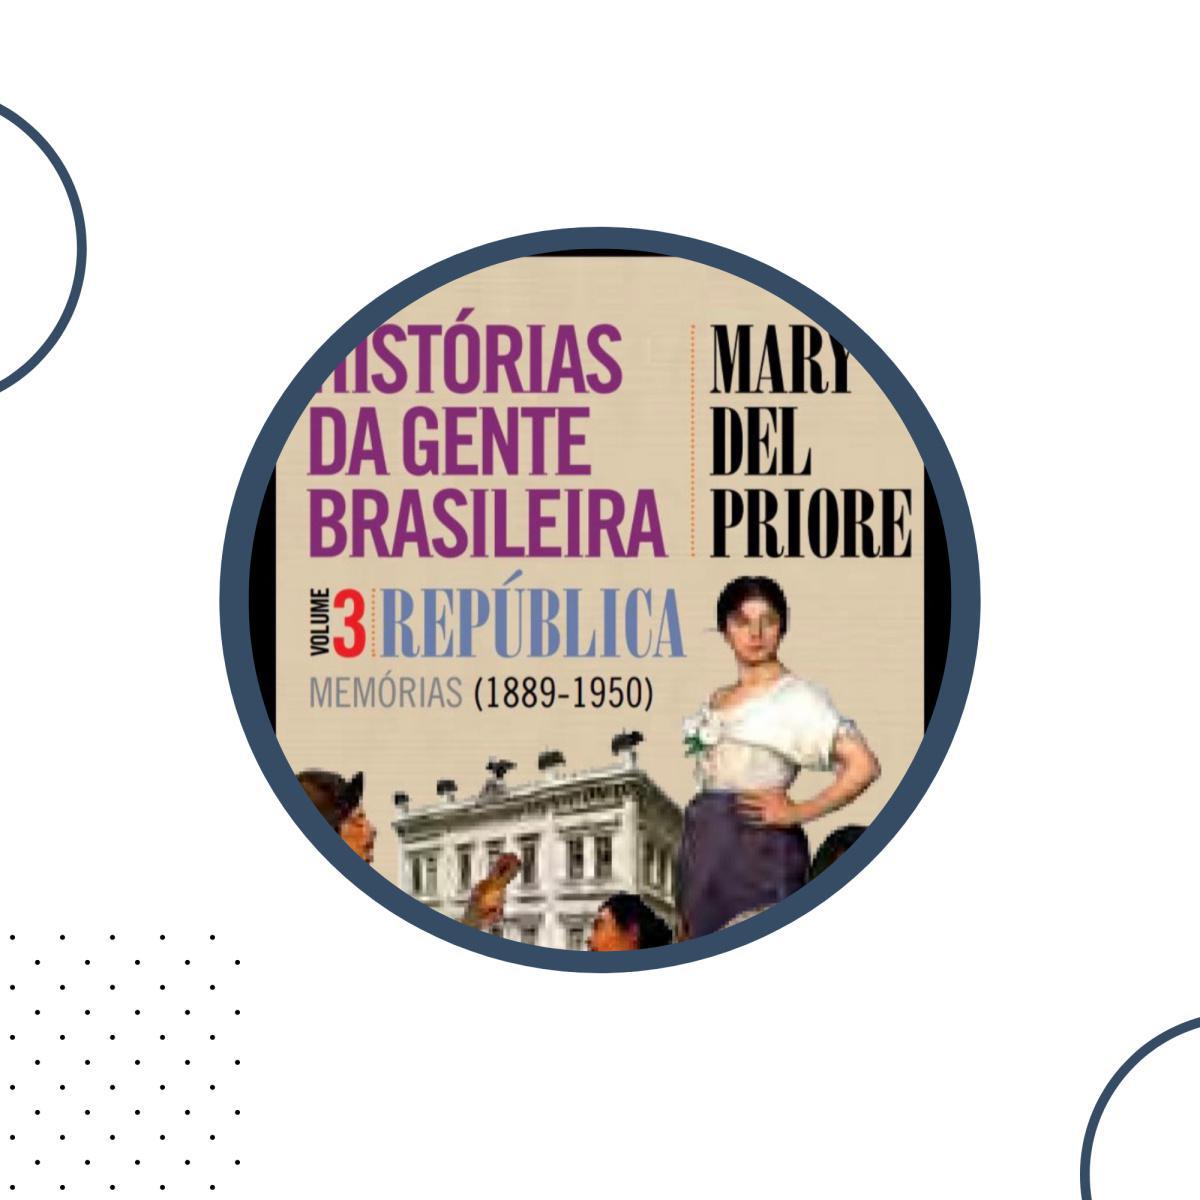 Histórias da gente brasileira. Volume 3B.